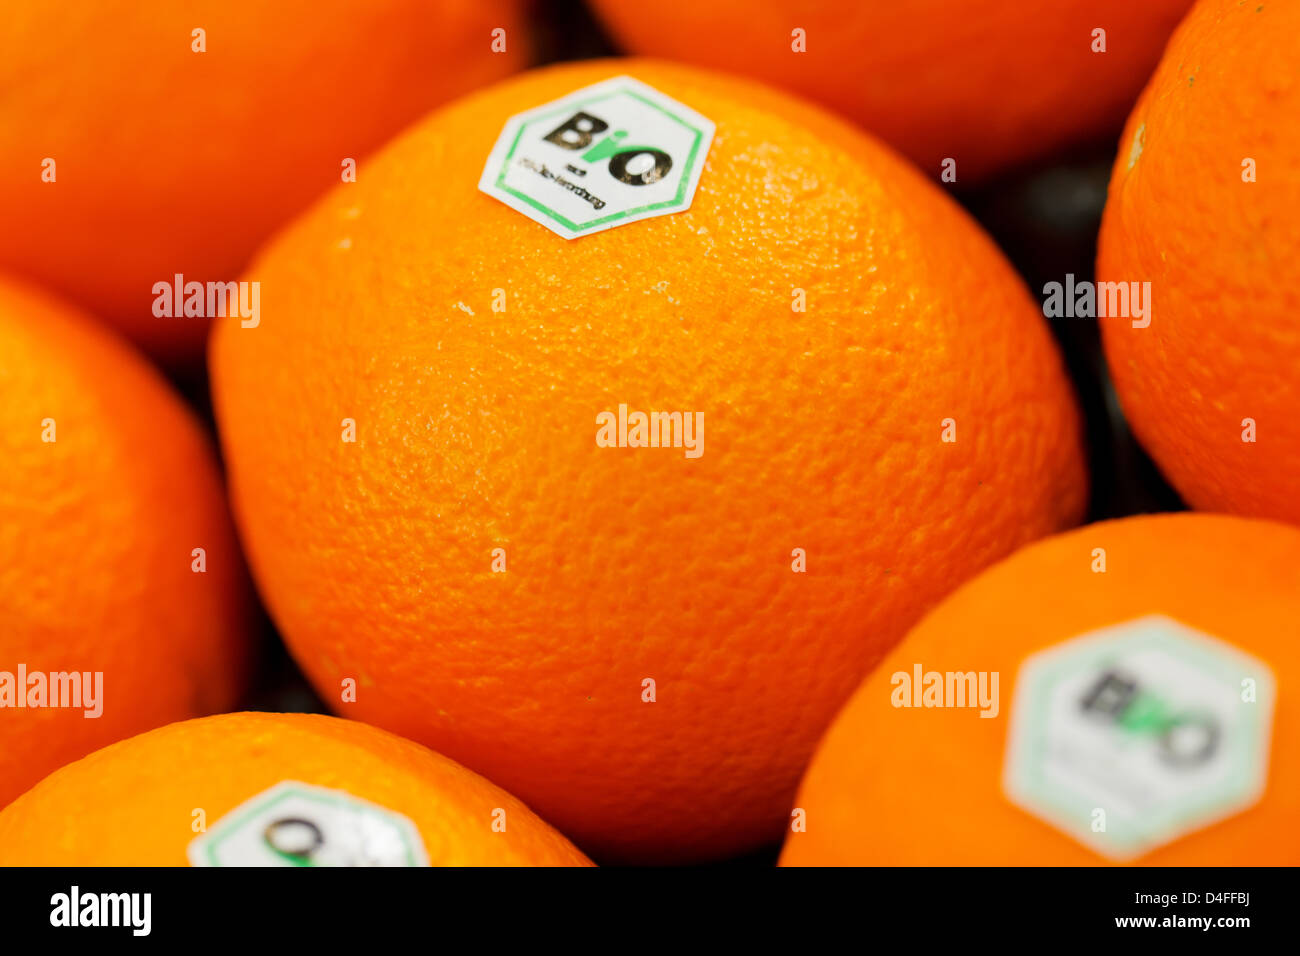 Berlin, Deutschland, Orangen EU-Bio-Logo auf der Fruit Logistica 2011 Stockfoto